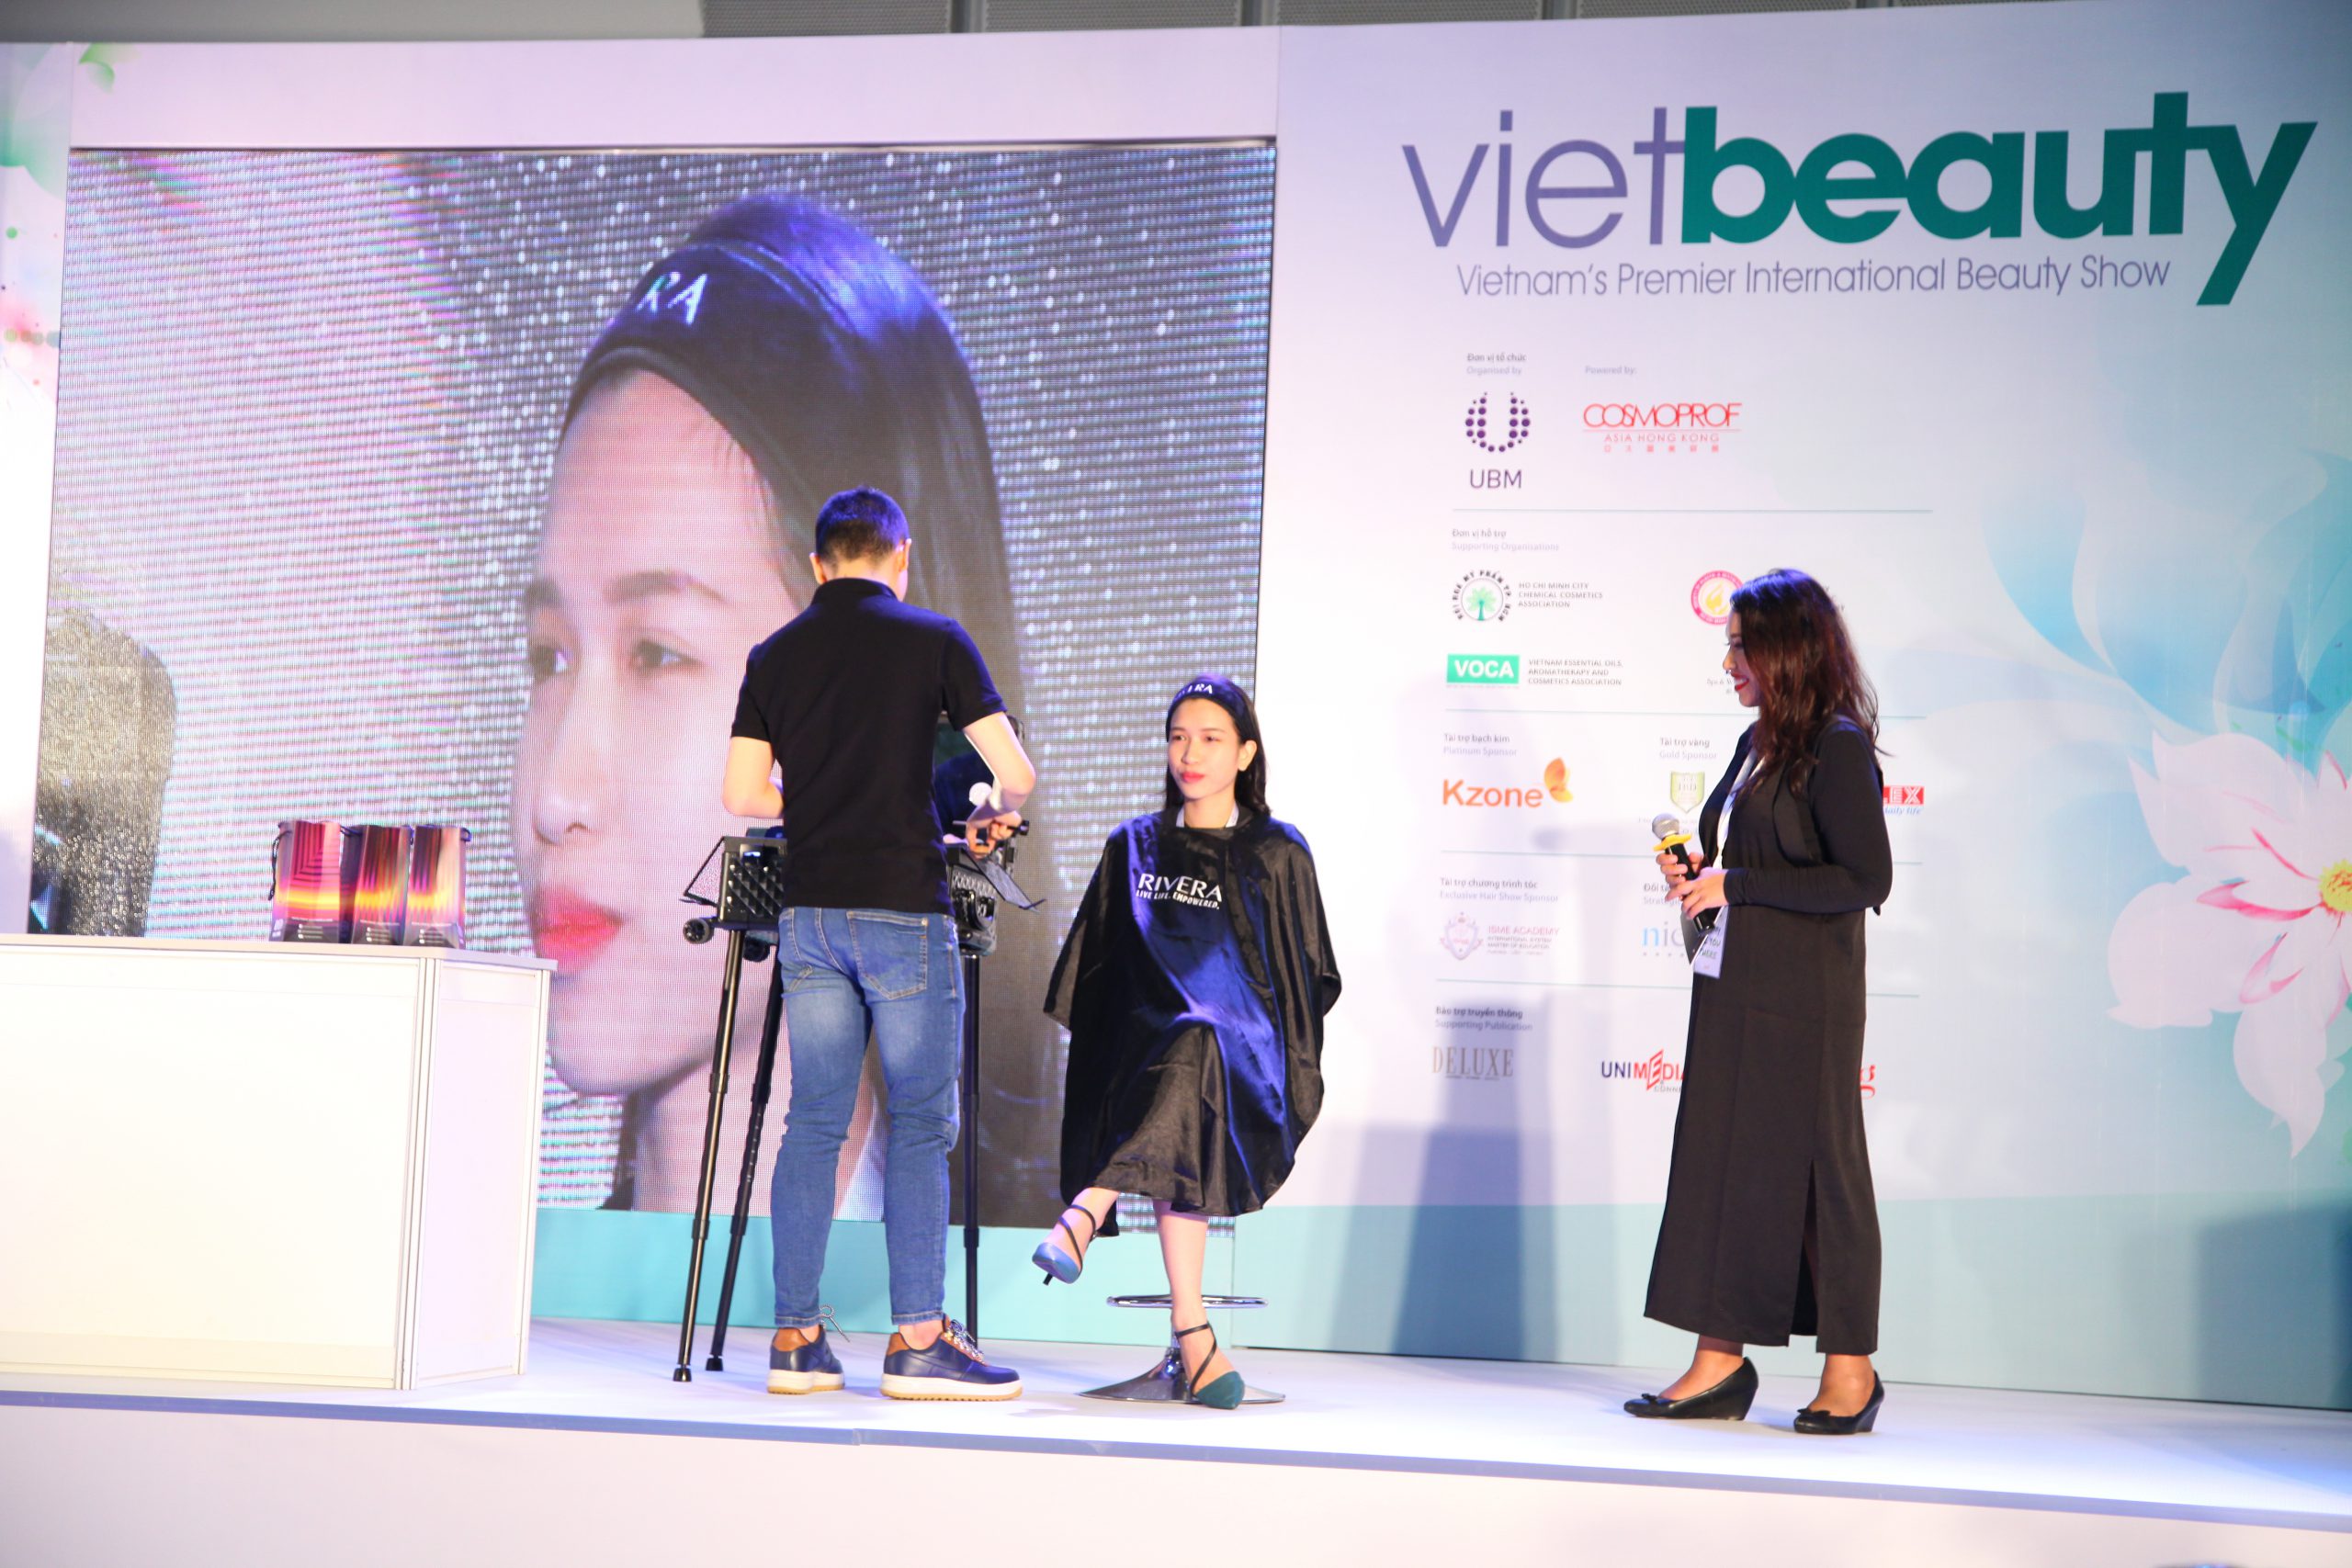 2019 Mekong Beauty Expo & Vietbeauty